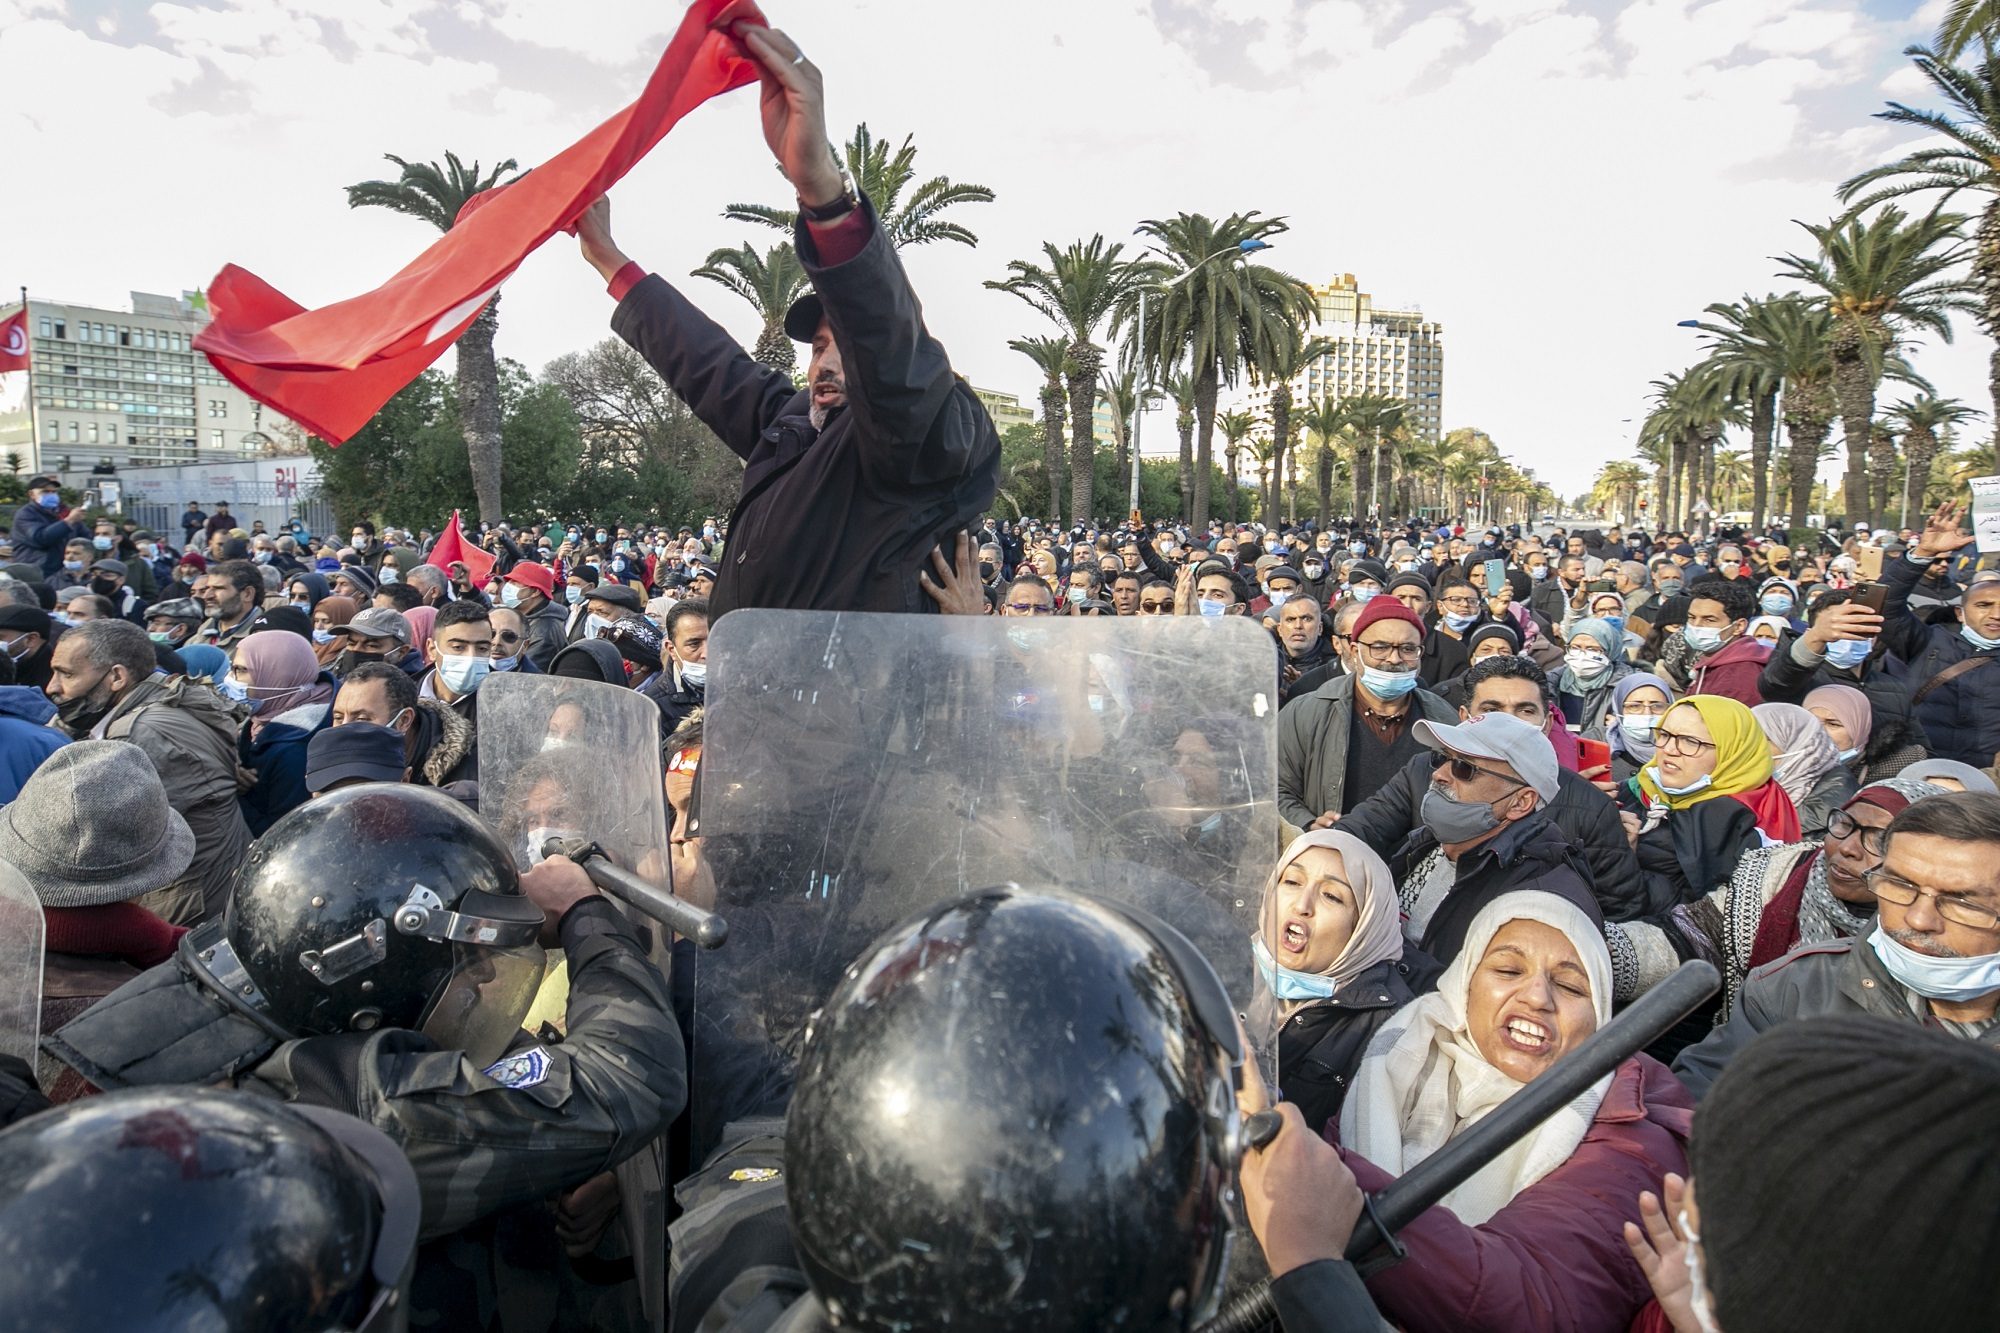 تونس تراجعت في مؤشر الديمقراطية بسبب التوترات السياسية الأخيرة/الأناضول